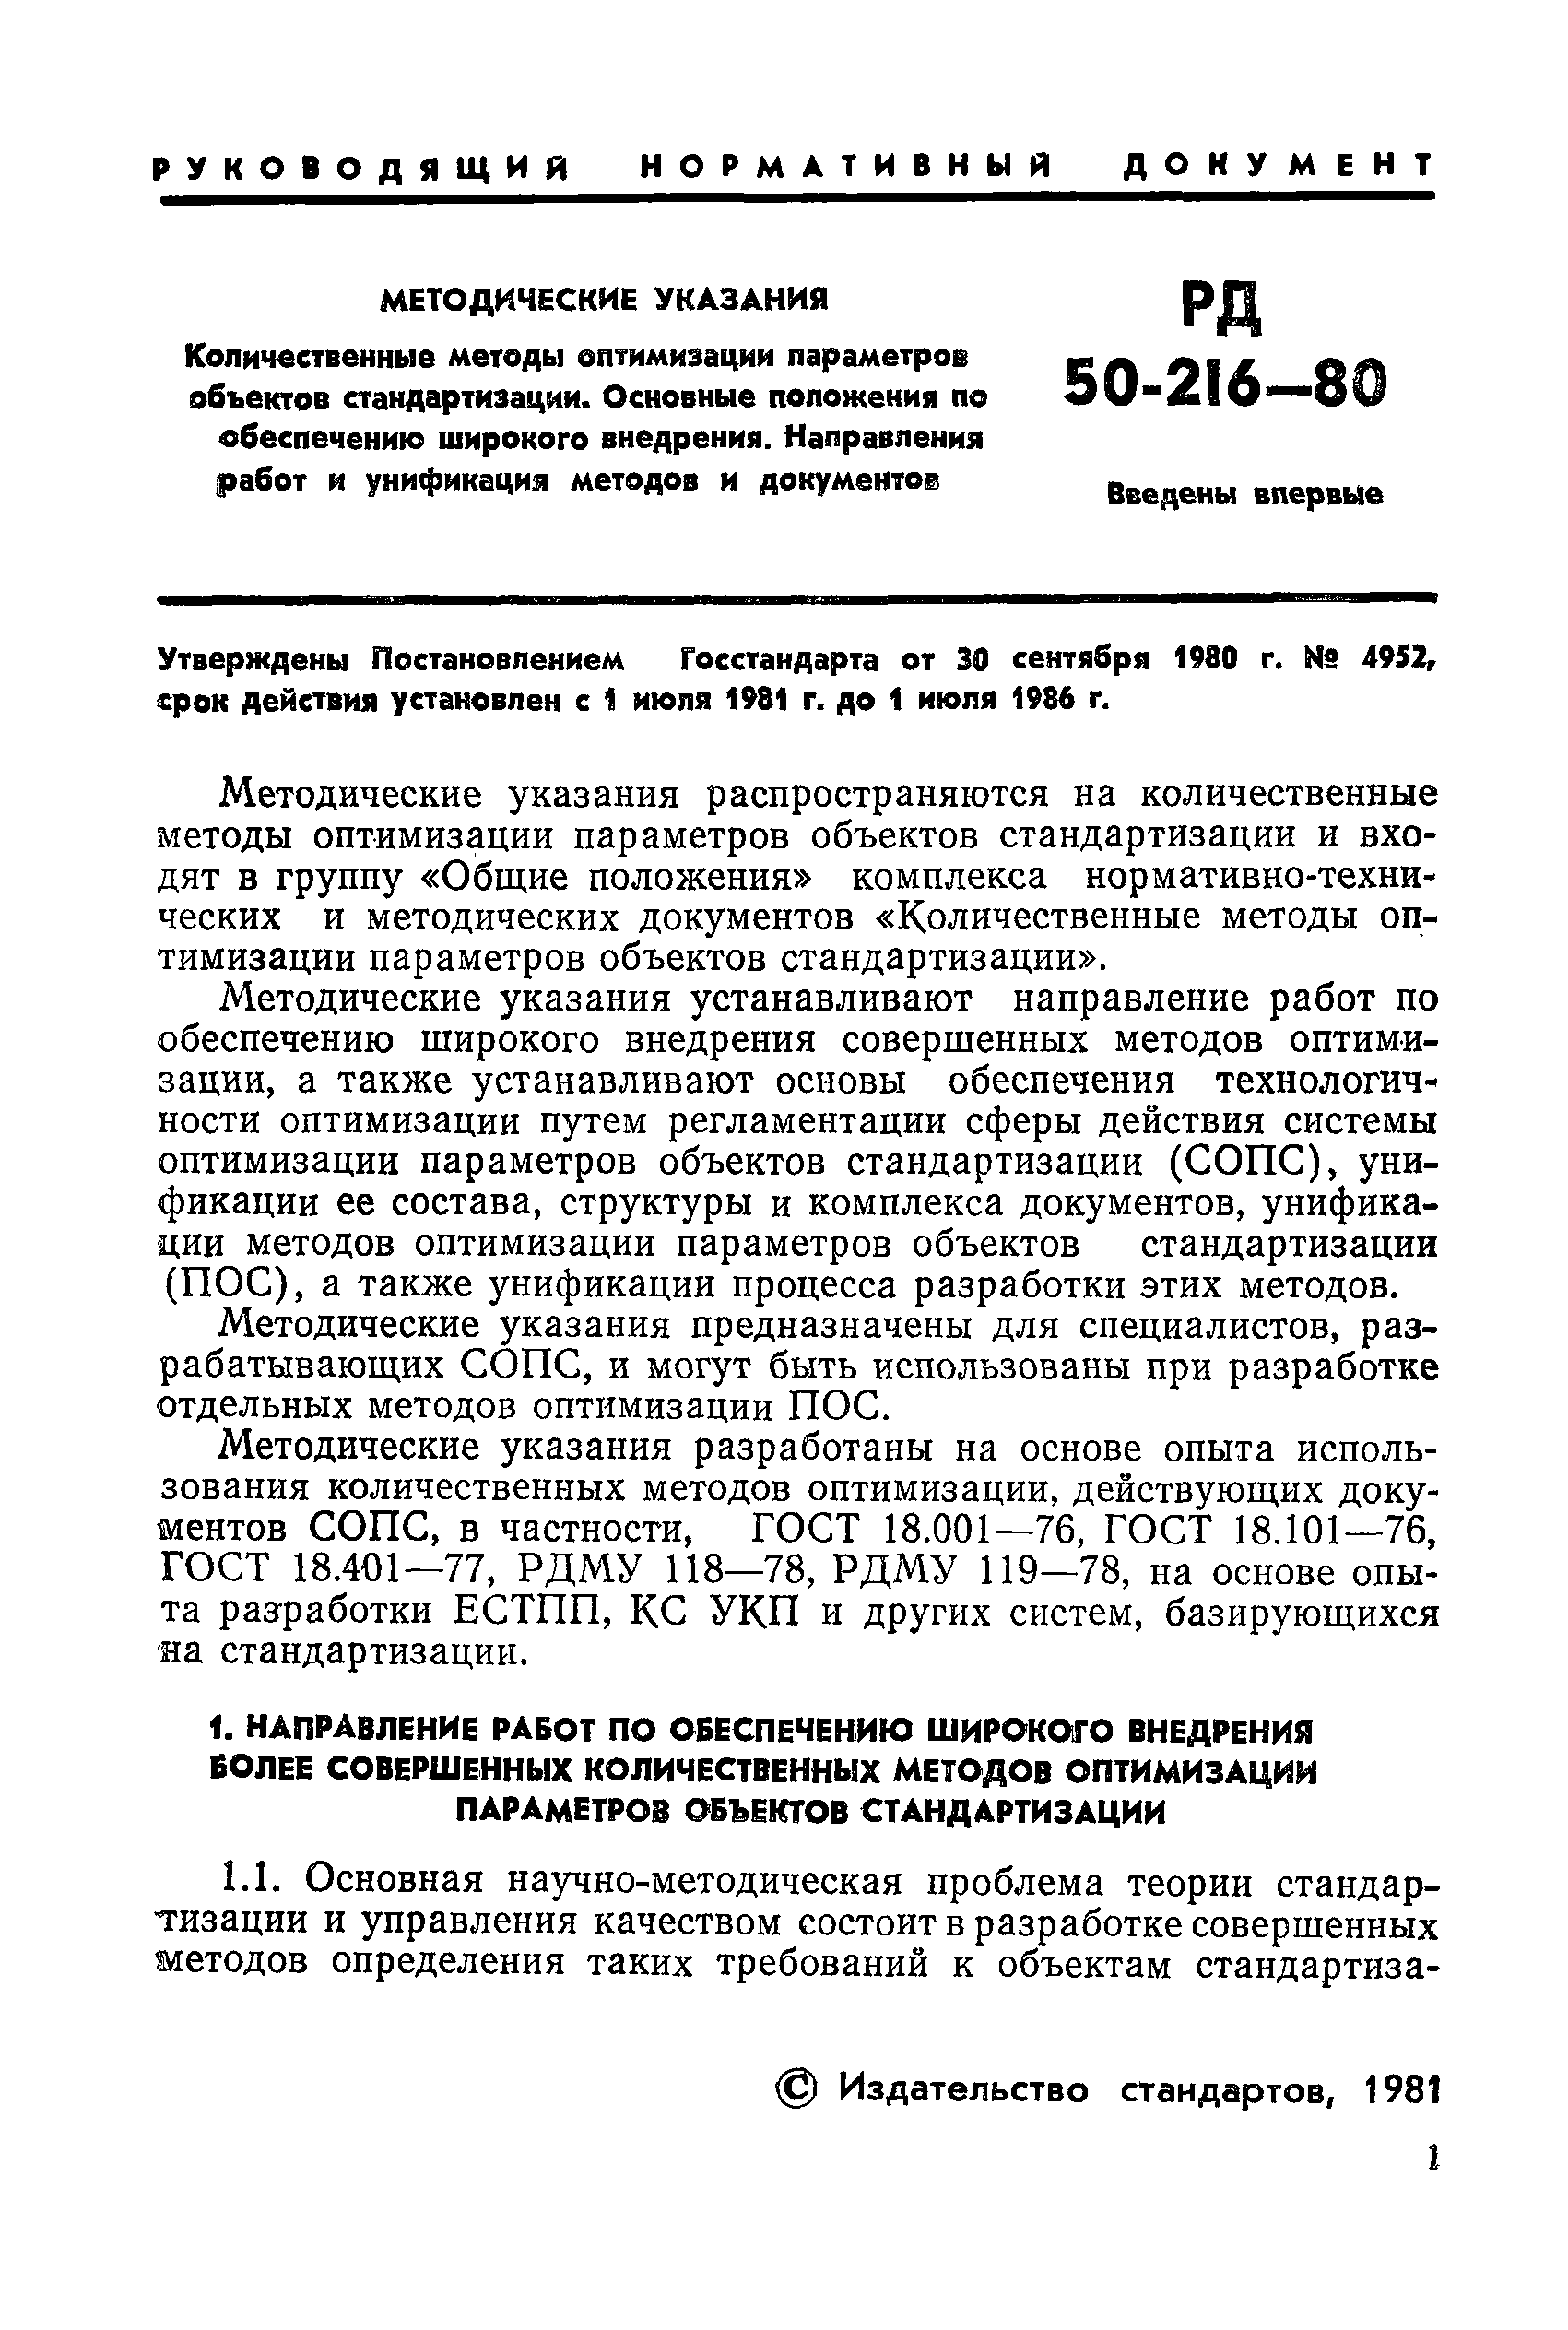 РД 50-216-80